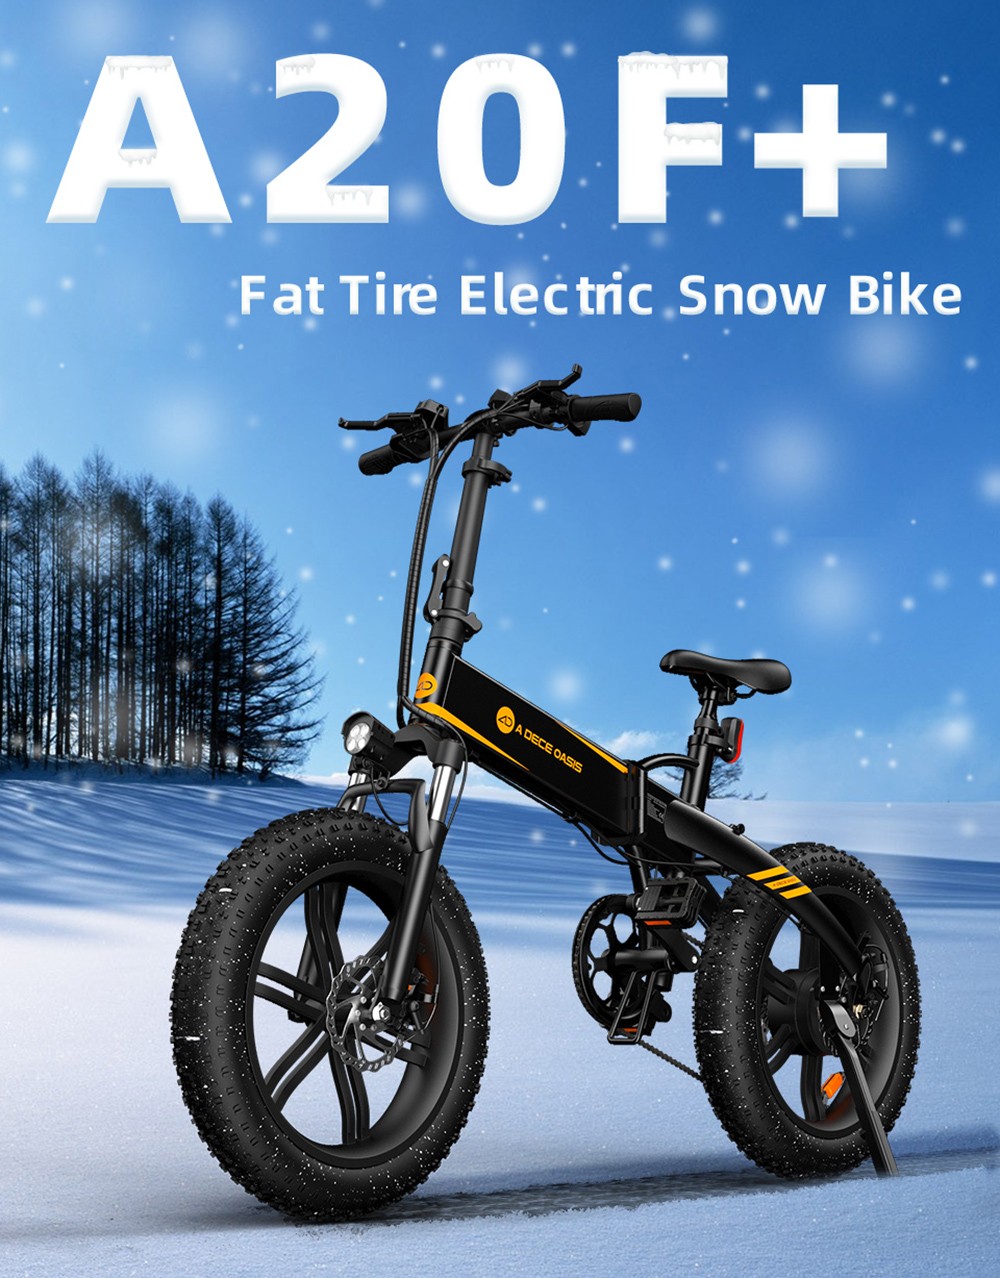 ADO A20F+ Bicicleta dobrável elétrica off-road 20*4.0 polegadas 500W Brushless DC Motor Desviador traseiro SHIMANO 7 velocidades 36V 10.4Ah Bateria removível 35km/h Velocidade máxima Potência pura até 50km Alcance Liga de alumínio Quadro - Preto